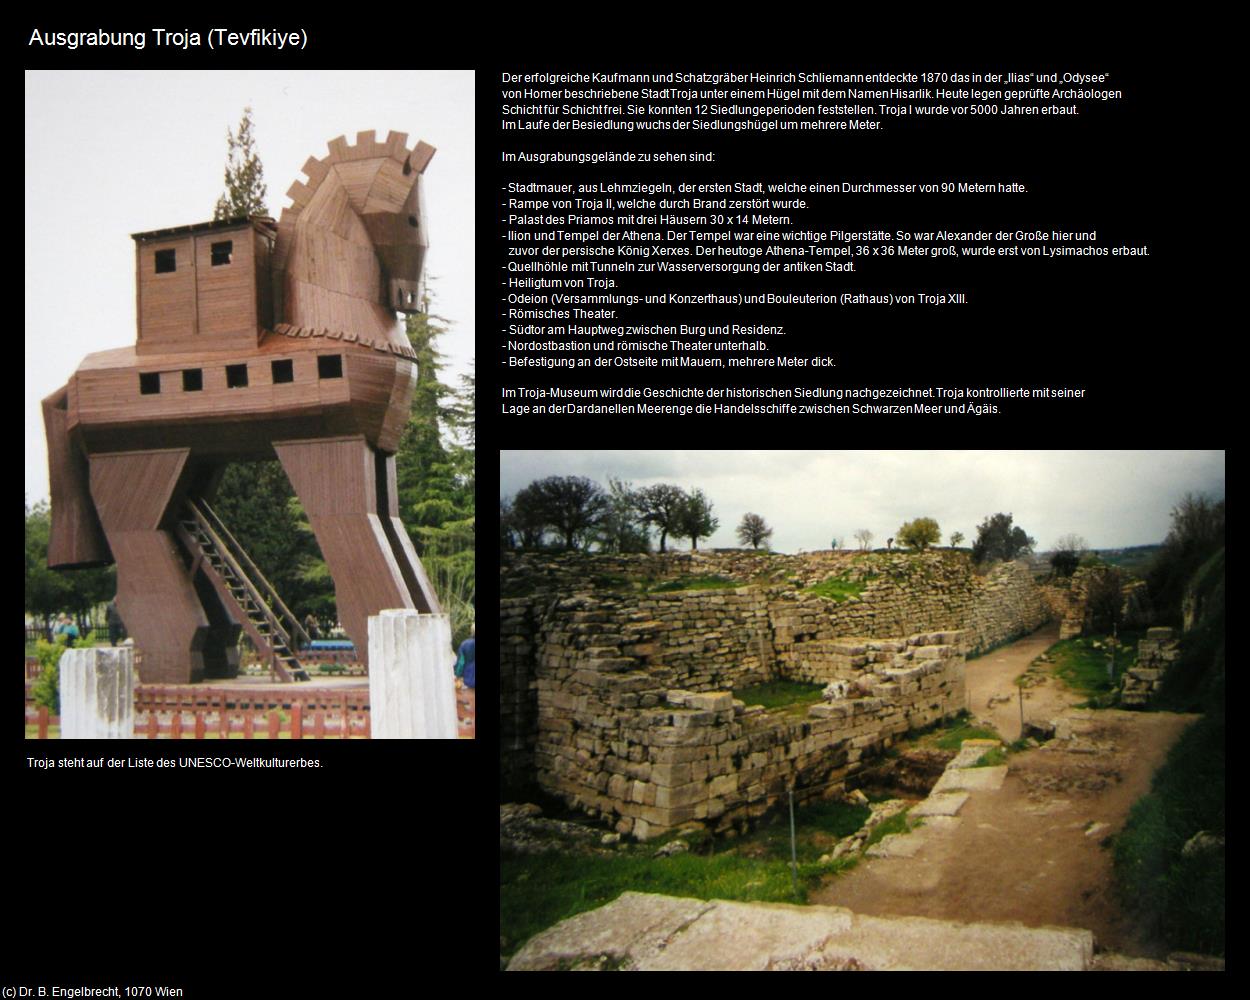 Ausgrabung Troja (Tevfikiye mit Troja) in TÜRKEI